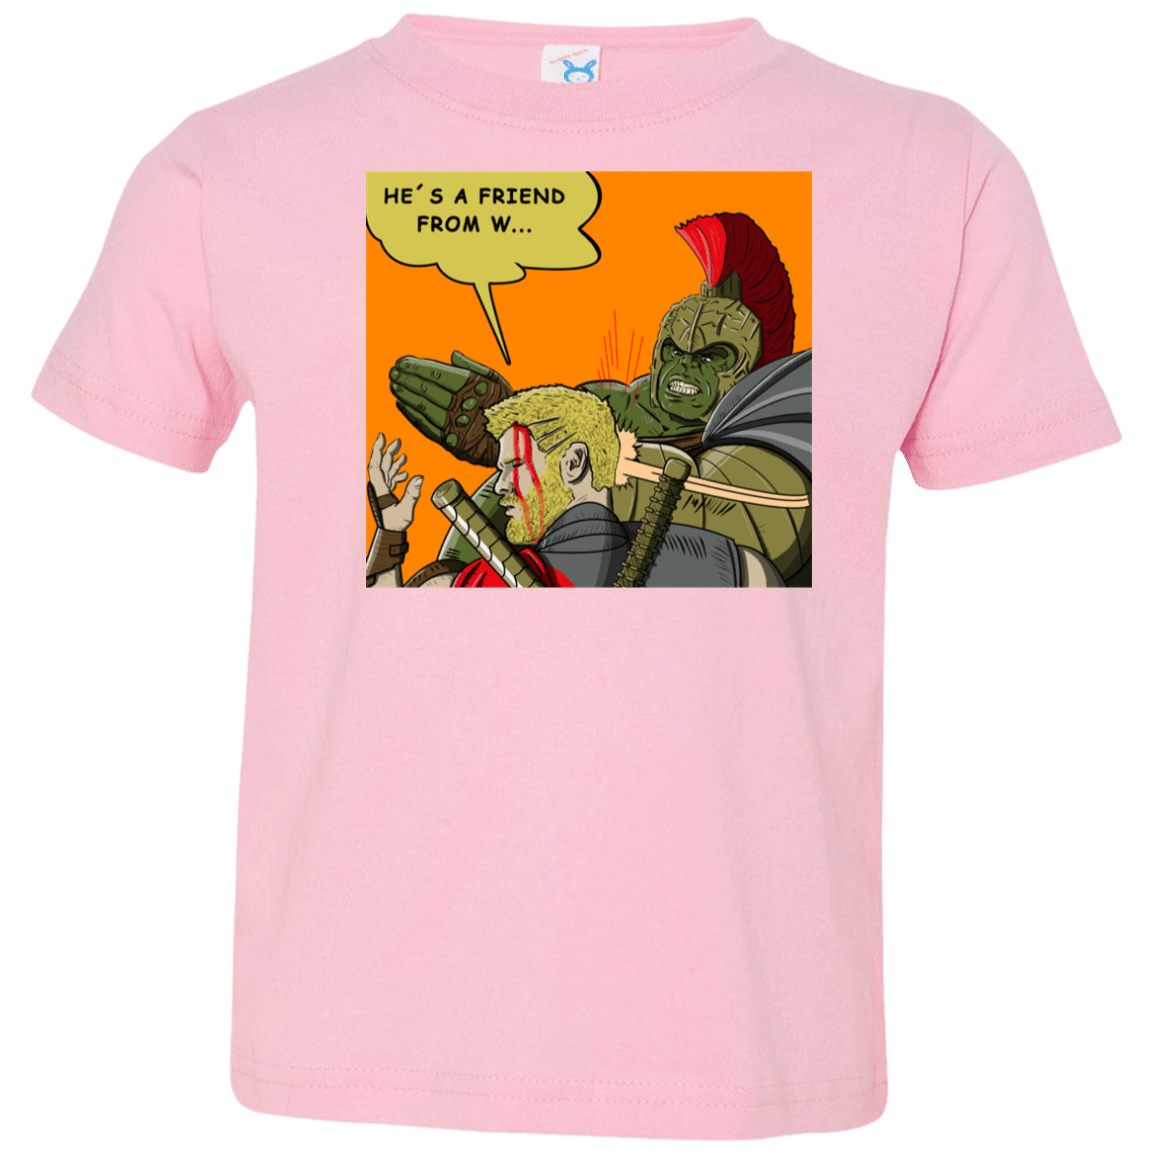 T-Shirts Pink / 2T Shut Up Toddler Premium T-Shirt